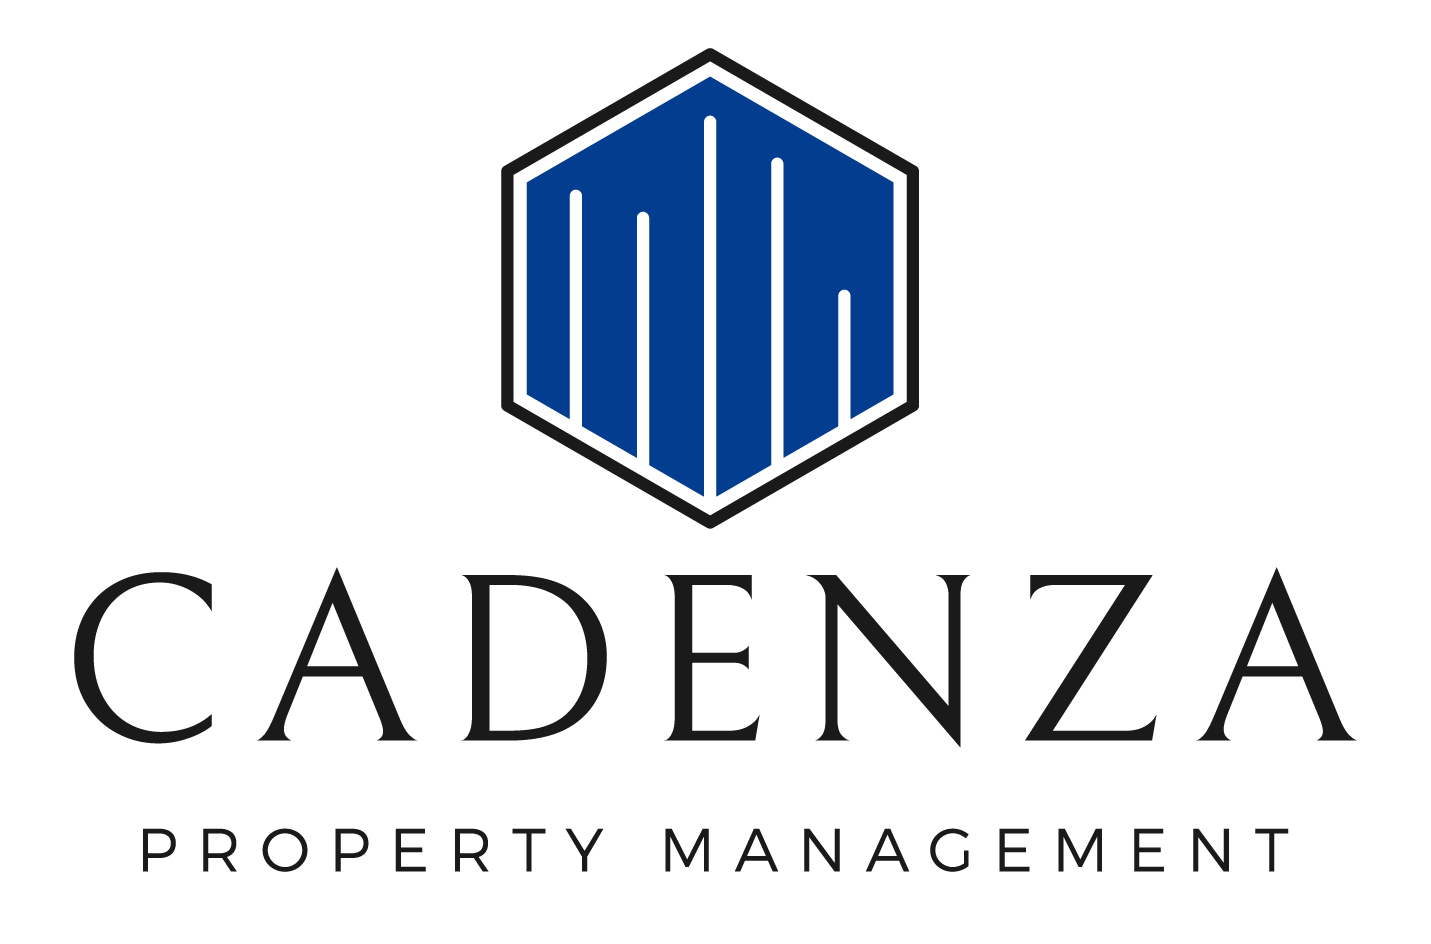 Cadenza Property Management logo